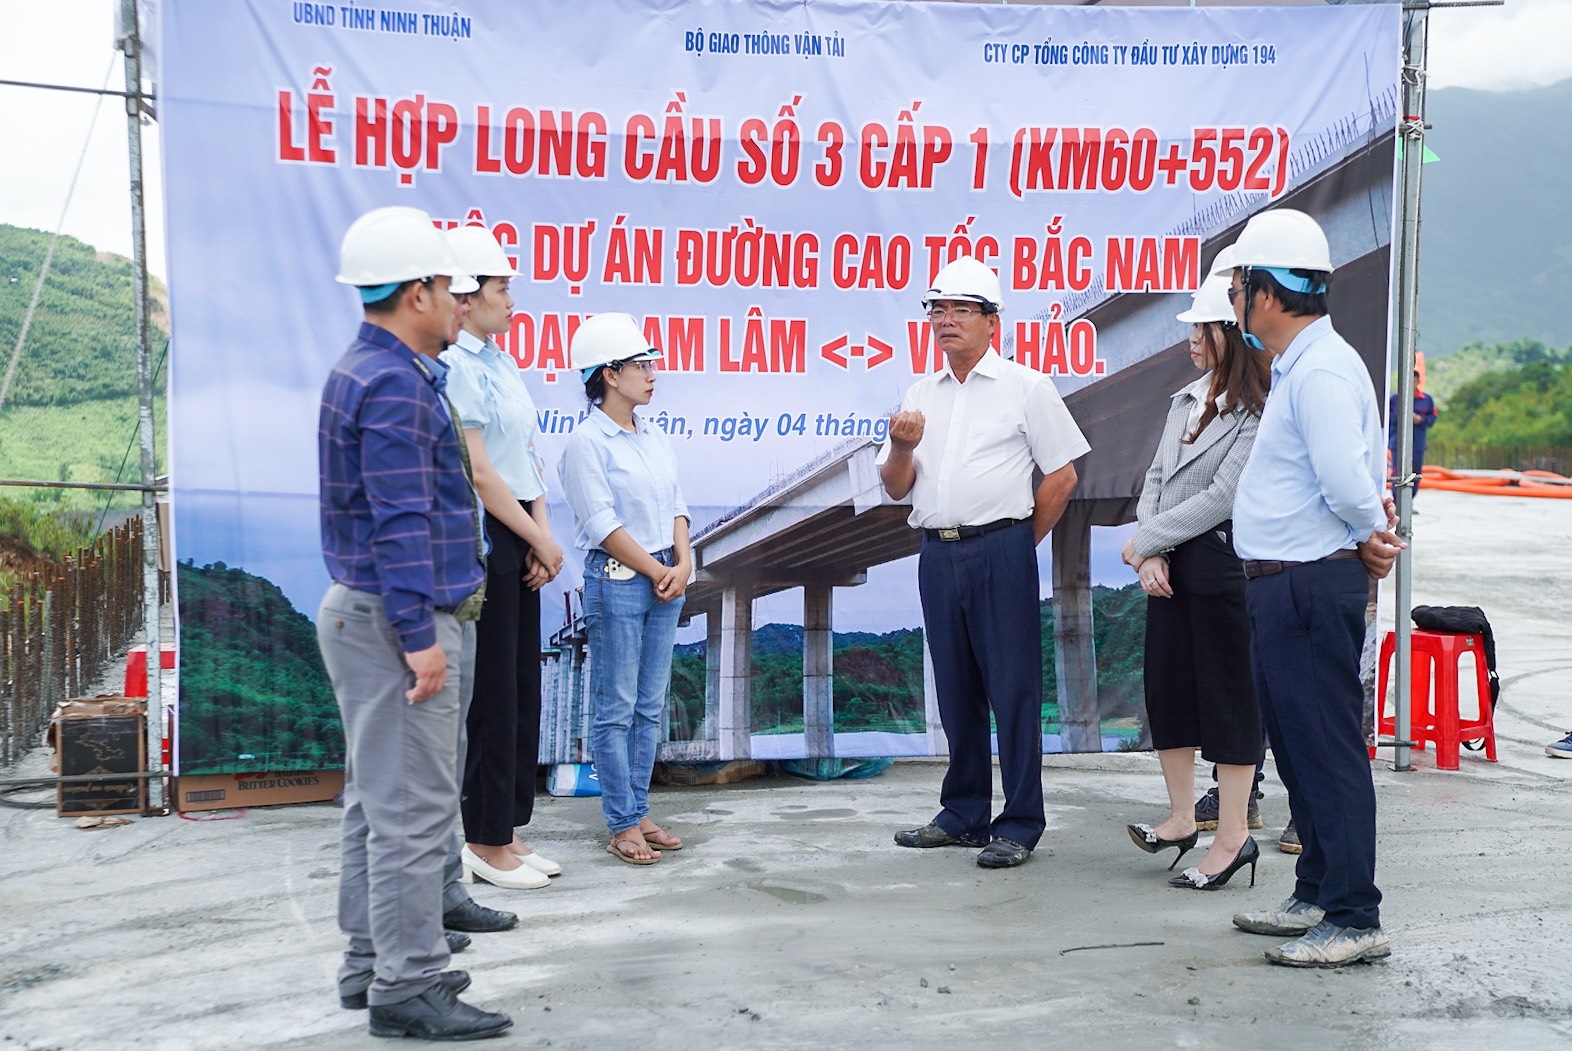 Hợp long cầu cao hơn 47m, nối thông toàn dự án cao tốc Cam Lâm - Vĩnh Hảo - Ảnh 4.